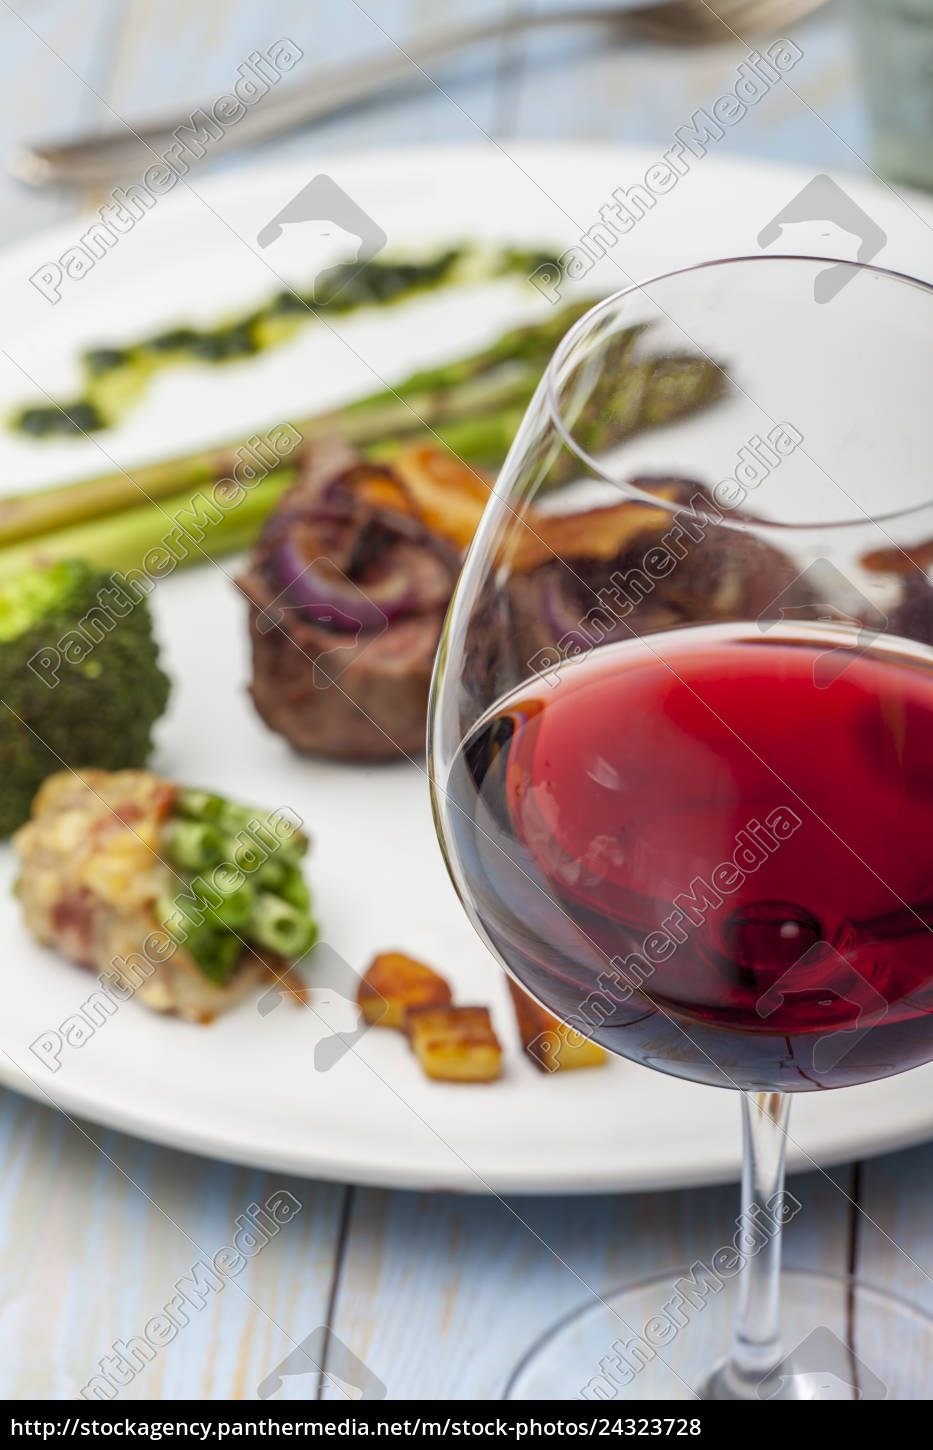 Rotwein und ein Steak - Lizenzfreies Foto - #24323728 | Bildagentur ...